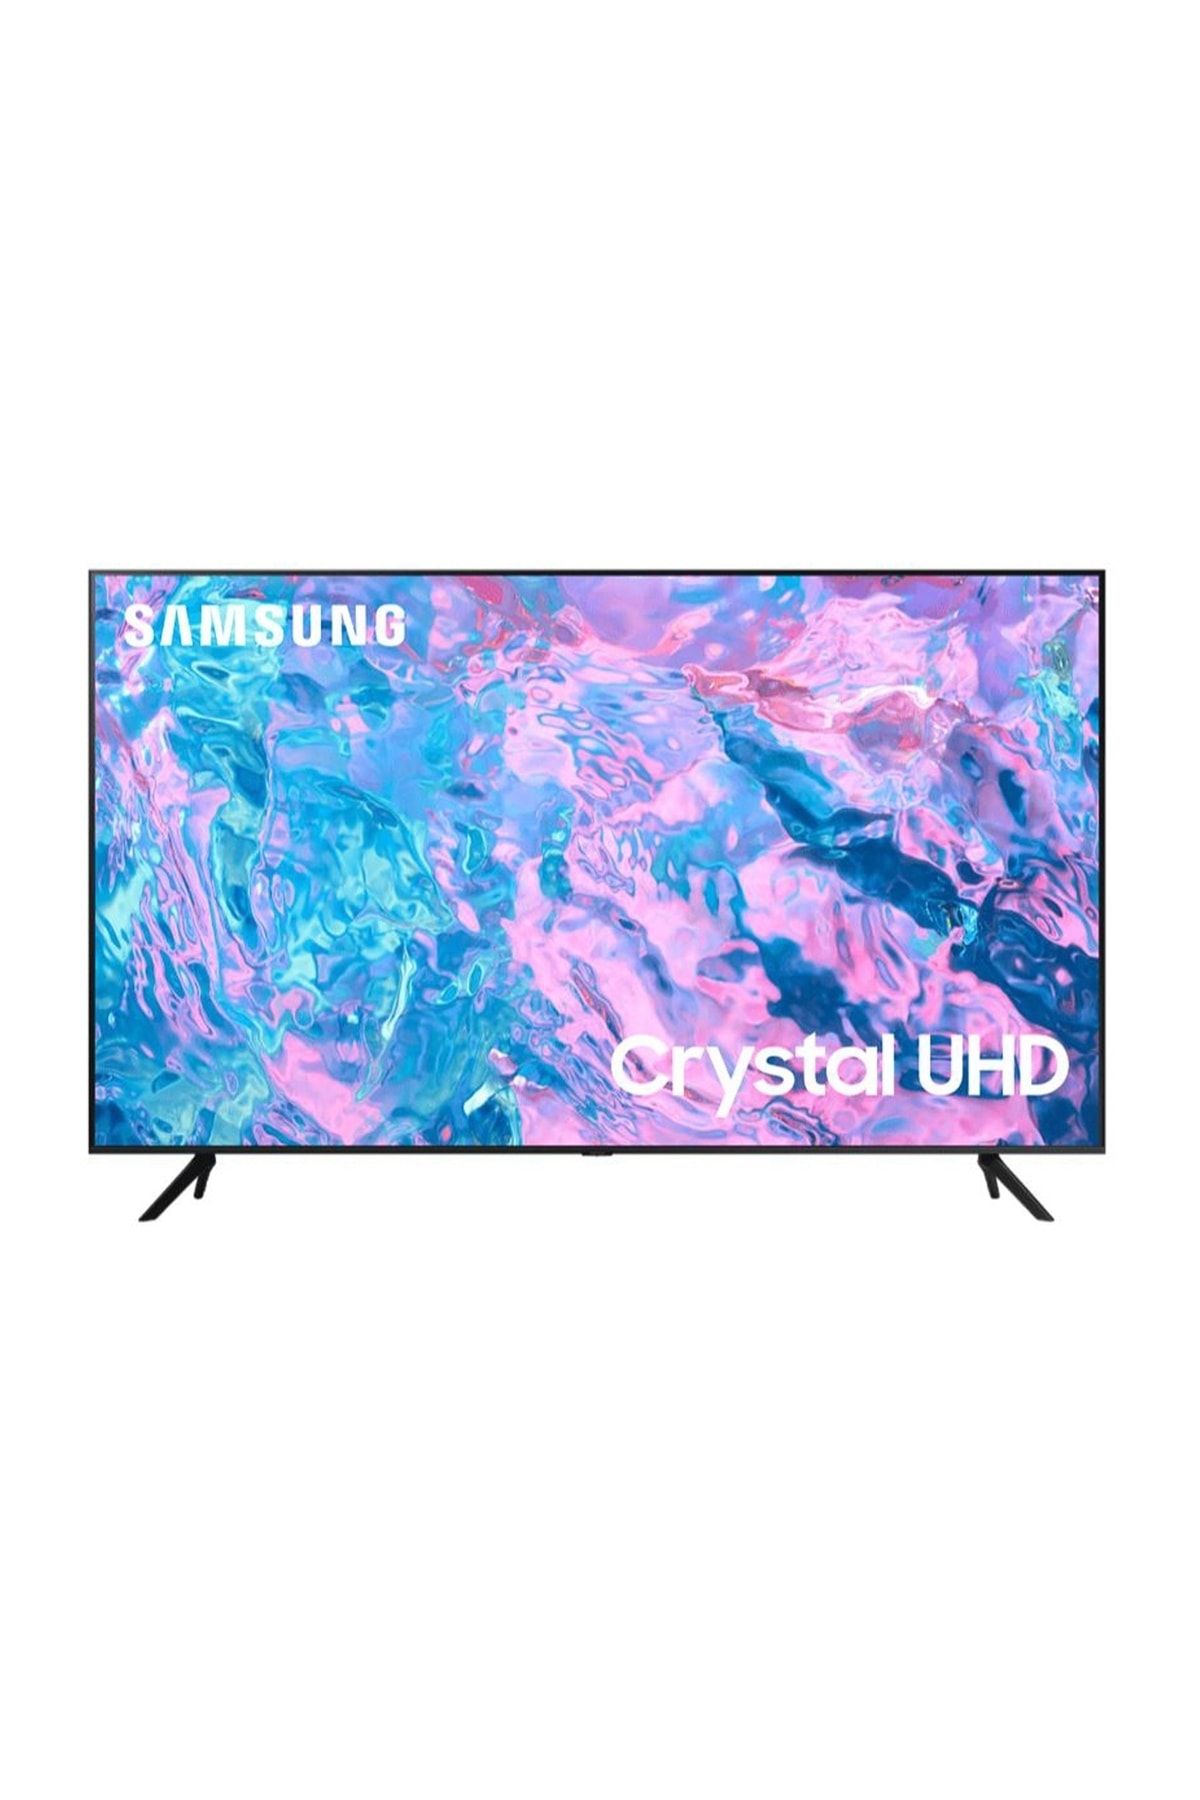 Samsung 65cu7000 65" 163 Ekran Uydu Alıcılı Crystal 4k Ultra Hd Smart Led Tv